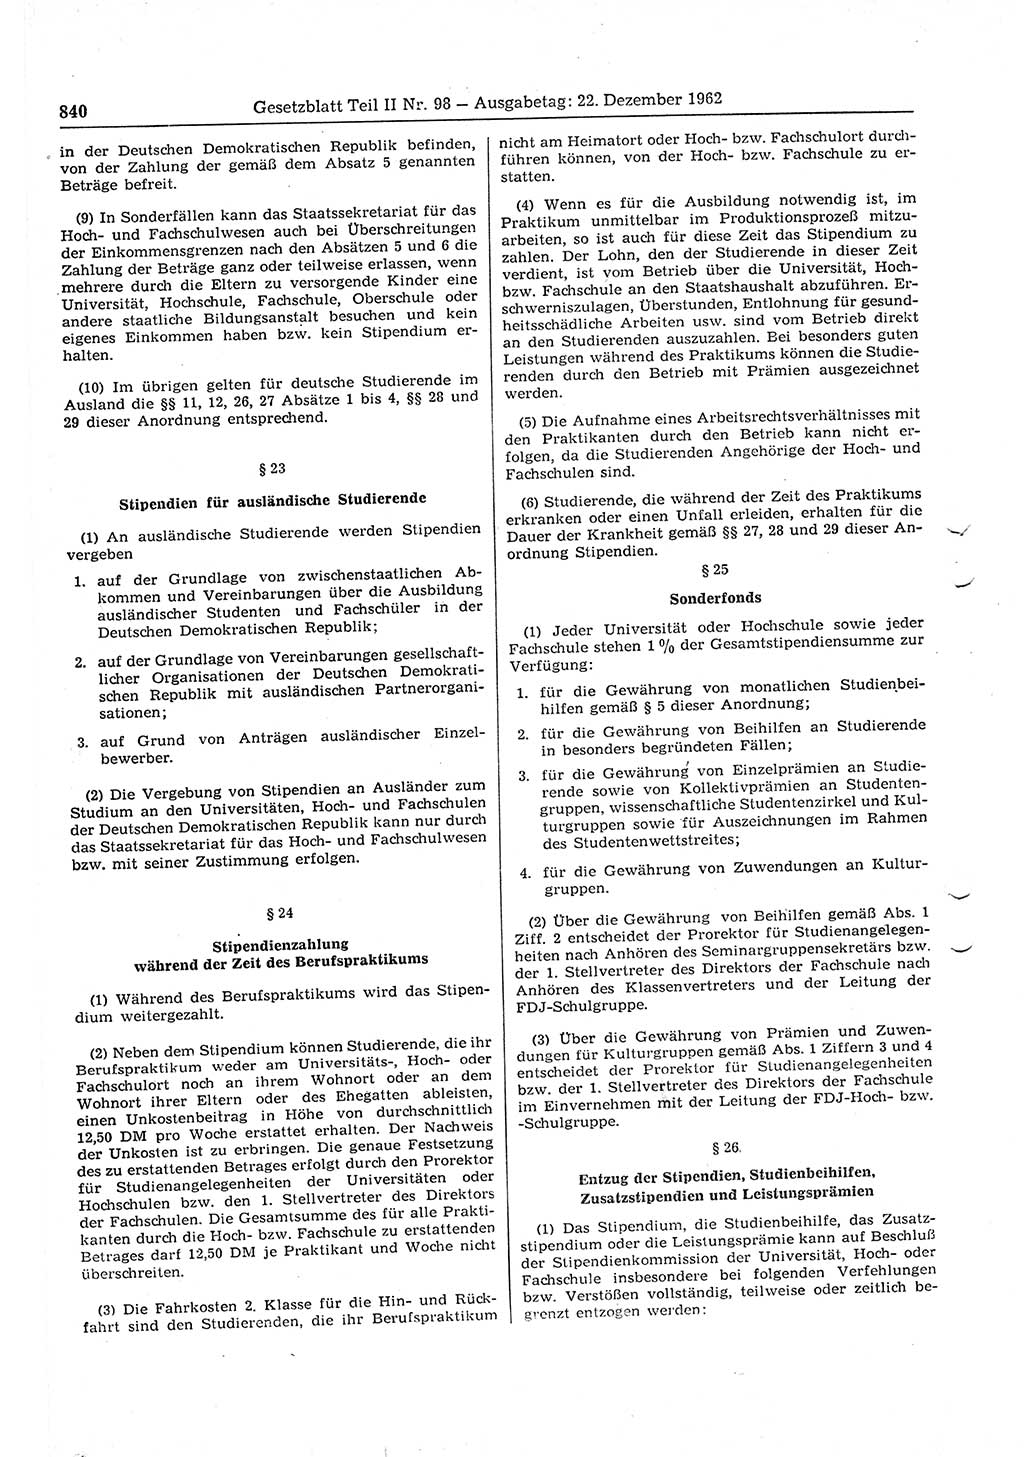 Gesetzblatt (GBl.) der Deutschen Demokratischen Republik (DDR) Teil ⅠⅠ 1962, Seite 840 (GBl. DDR ⅠⅠ 1962, S. 840)